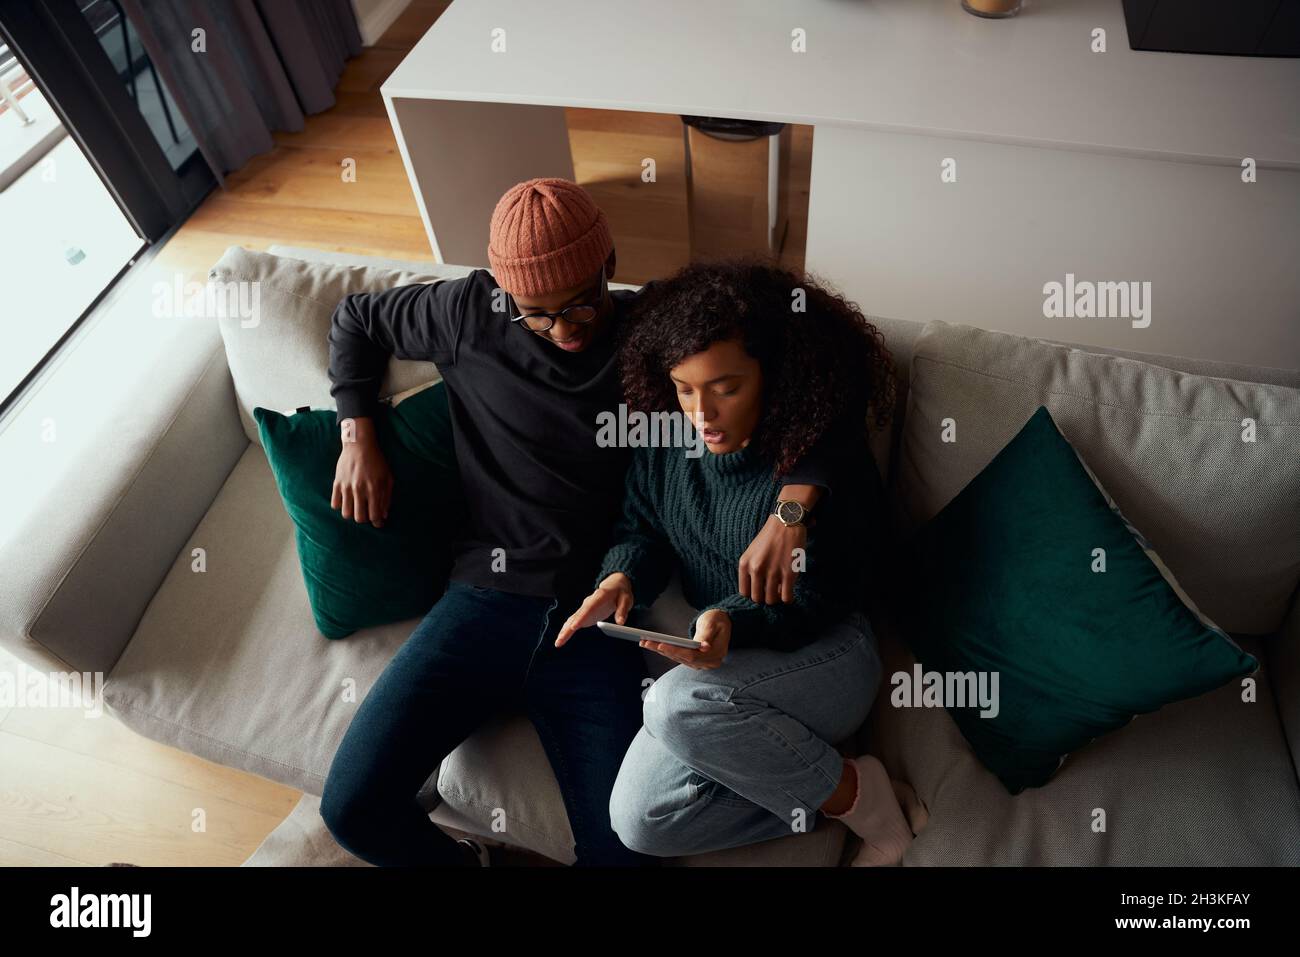 Vue panoramique d'un couple multiethnique heureux assis sur un canapé à l'aide d'une tablette électronique Banque D'Images